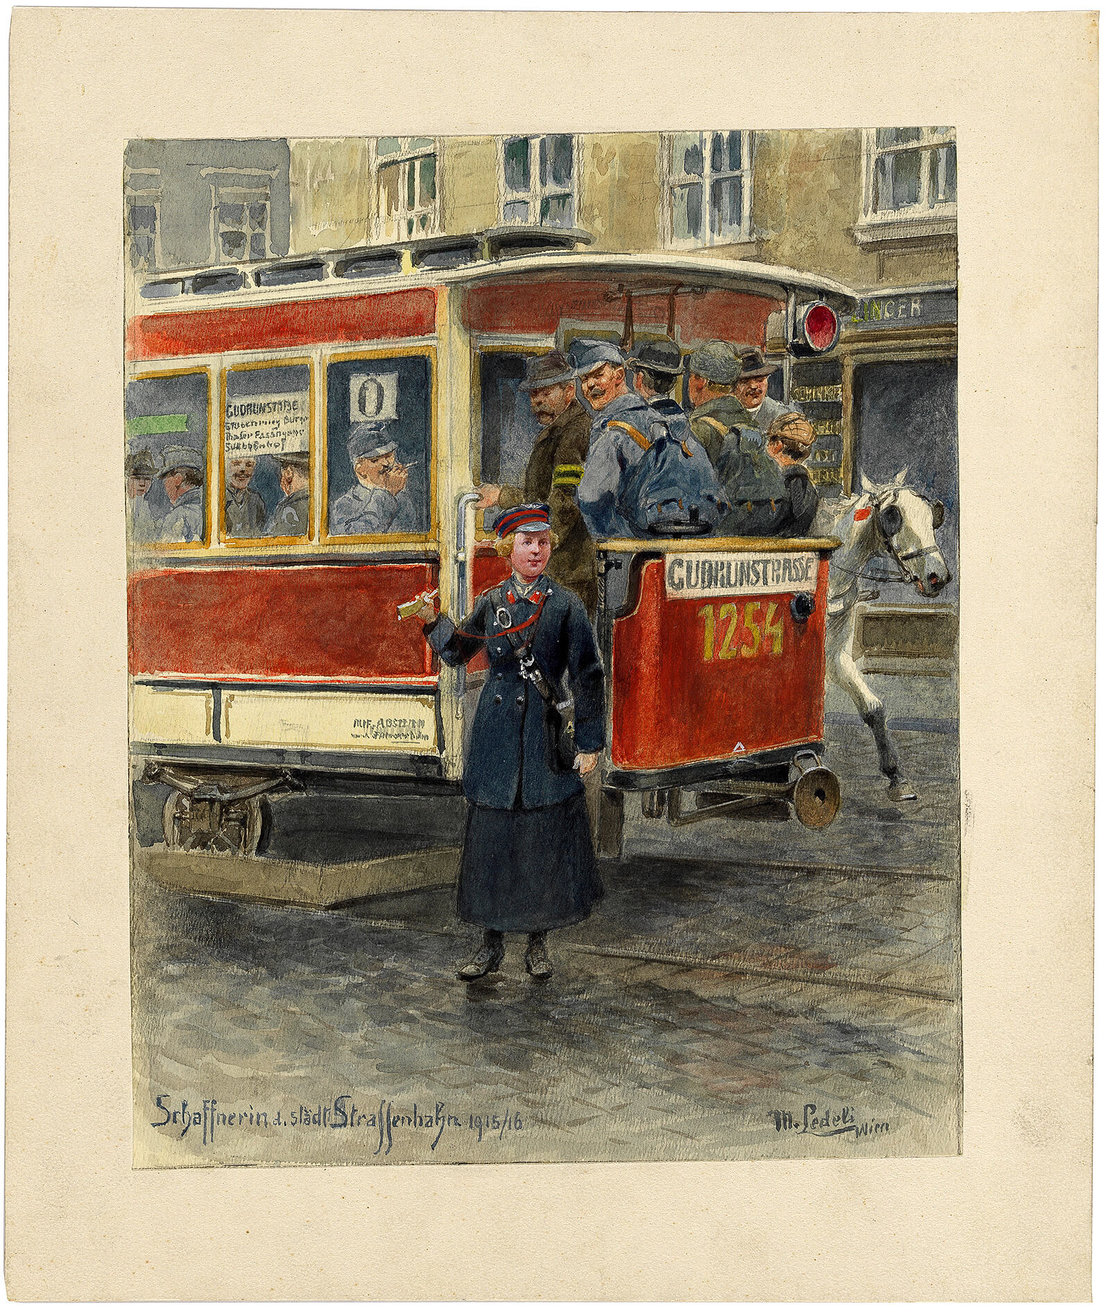 Moritz Ledeli: „Schaffnerin der städtischen Straßenbahn 1915/16", Wien Museum 